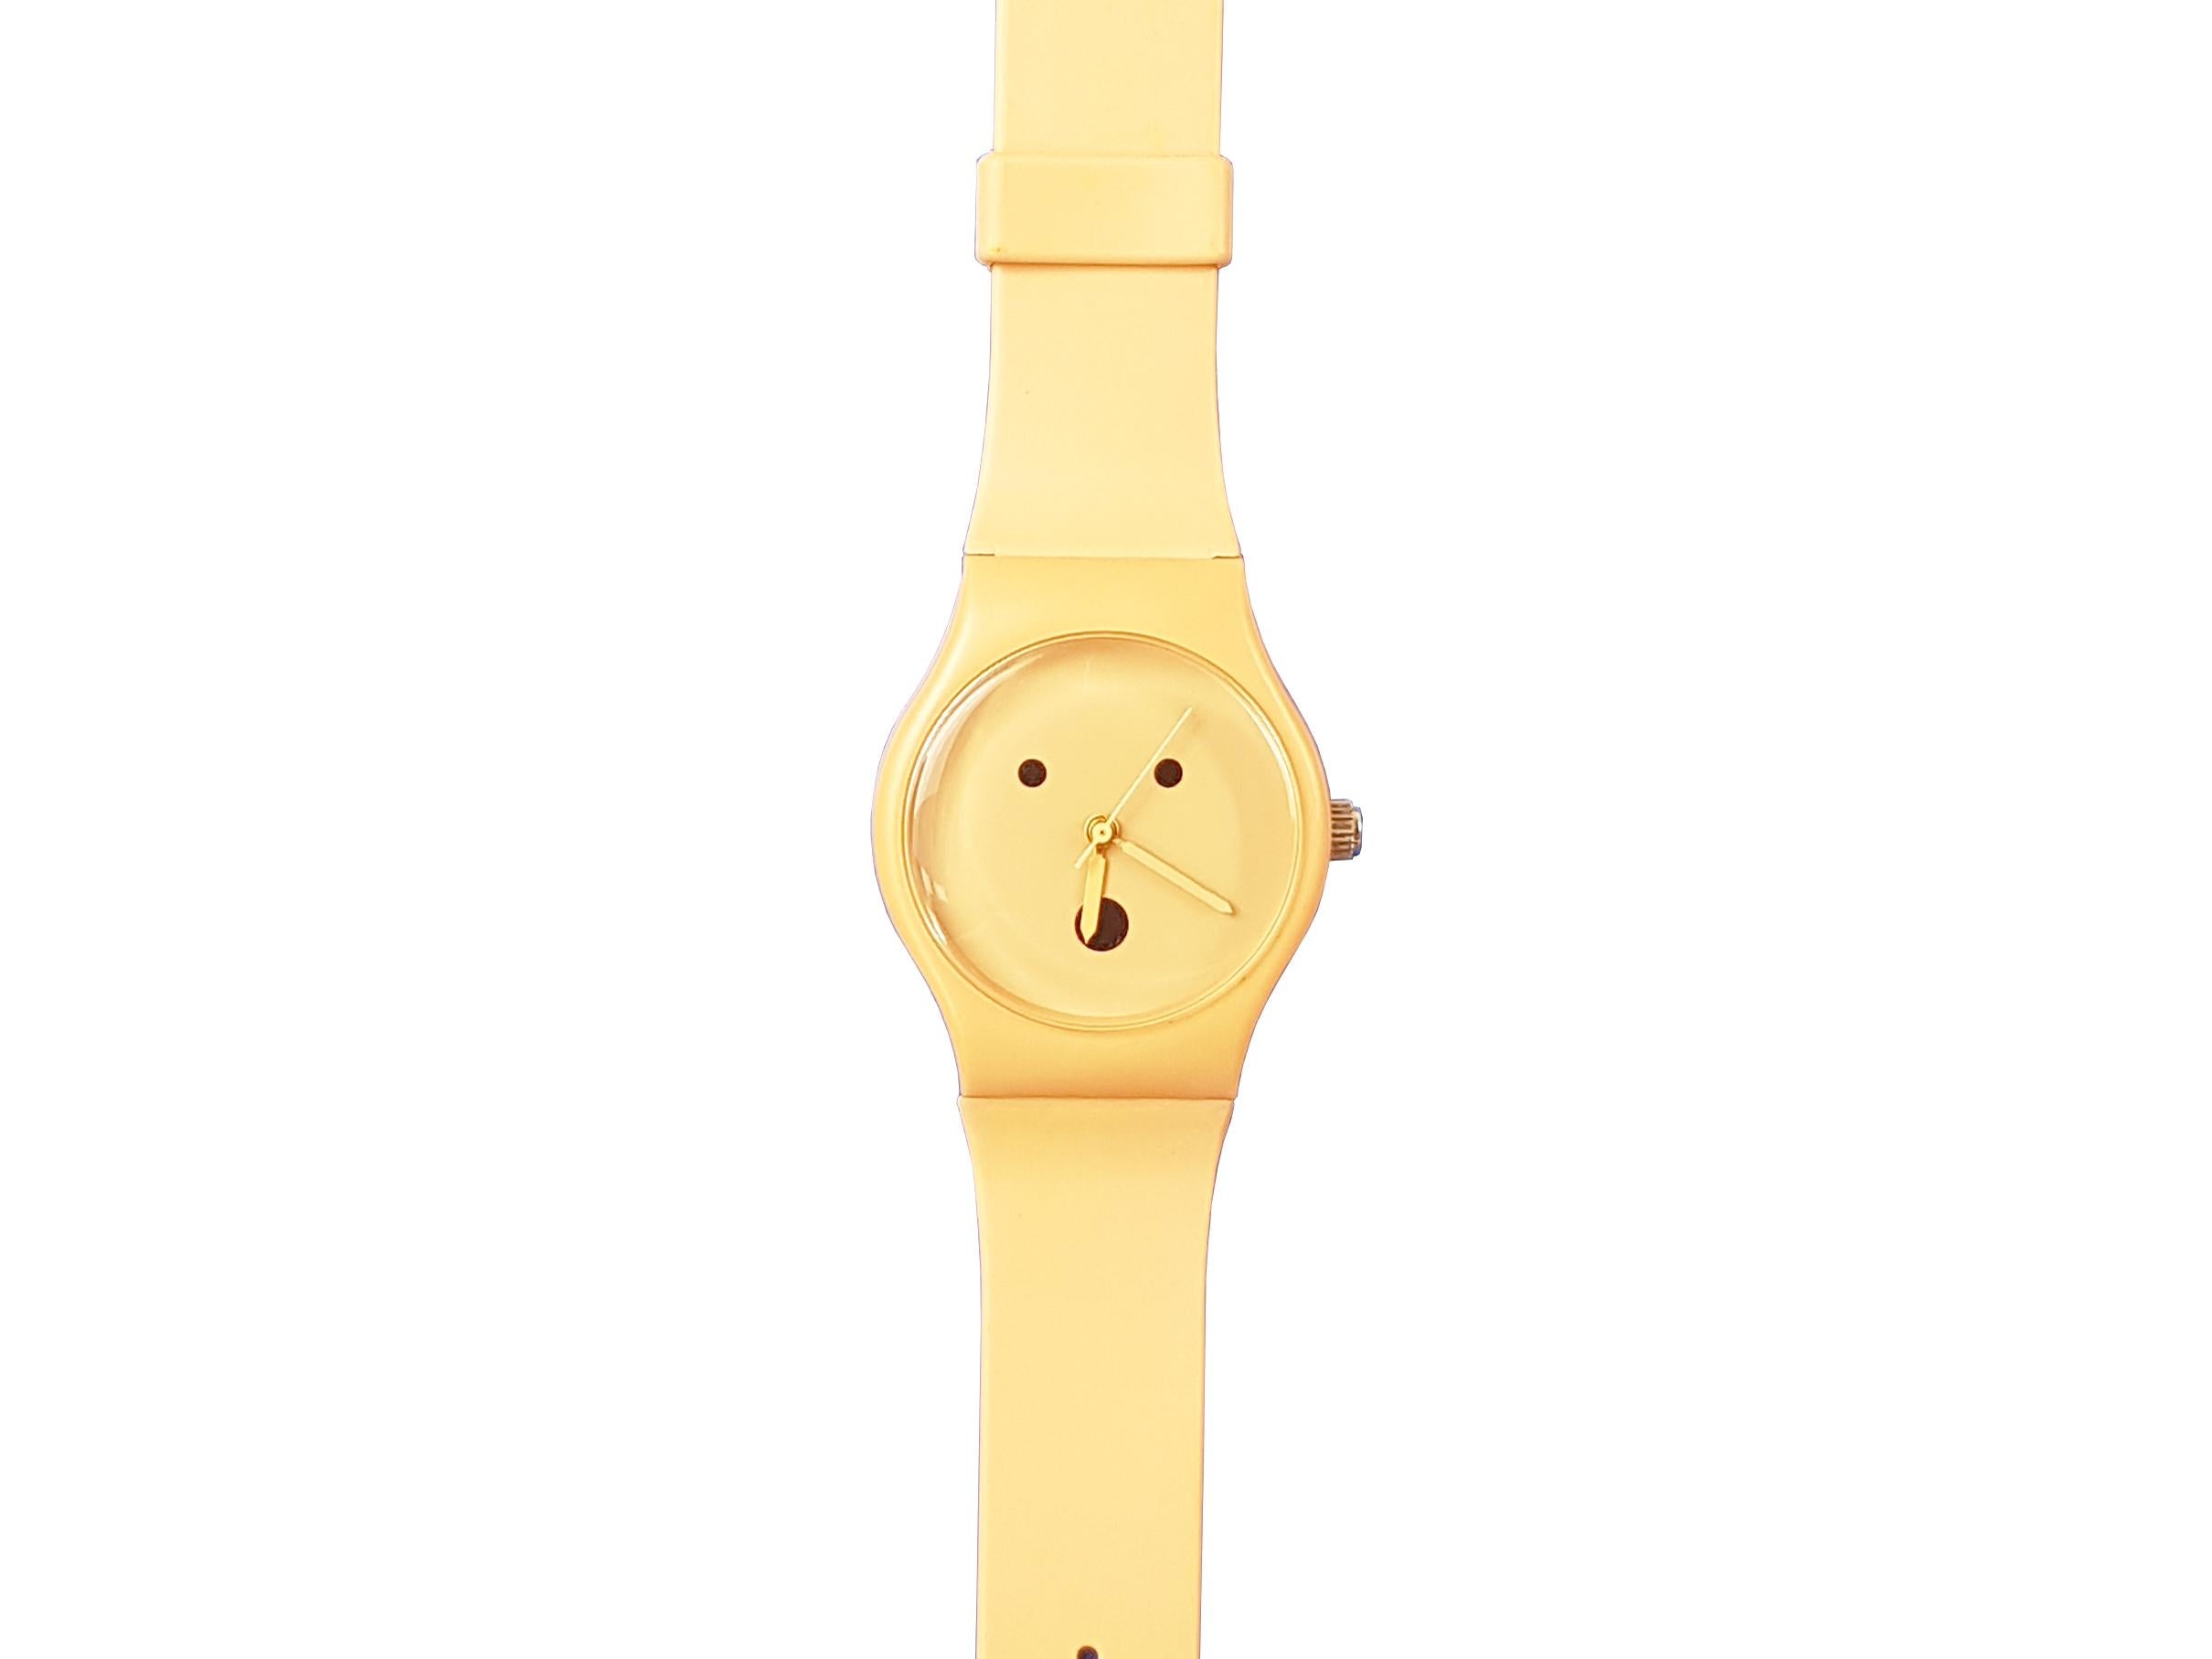 Armbanduhr, entworfen von Alessadro Mendini für Museo Alchimia, 90er Jahre. Diese Handaufzugsuhr war ein Prototyp für Swatch, ein bekanntes Unternehmen, für das Mendini in den 90er Jahren mehrere Uhren entwarf.
Diese Uhr ist aus altrosa Gummi und